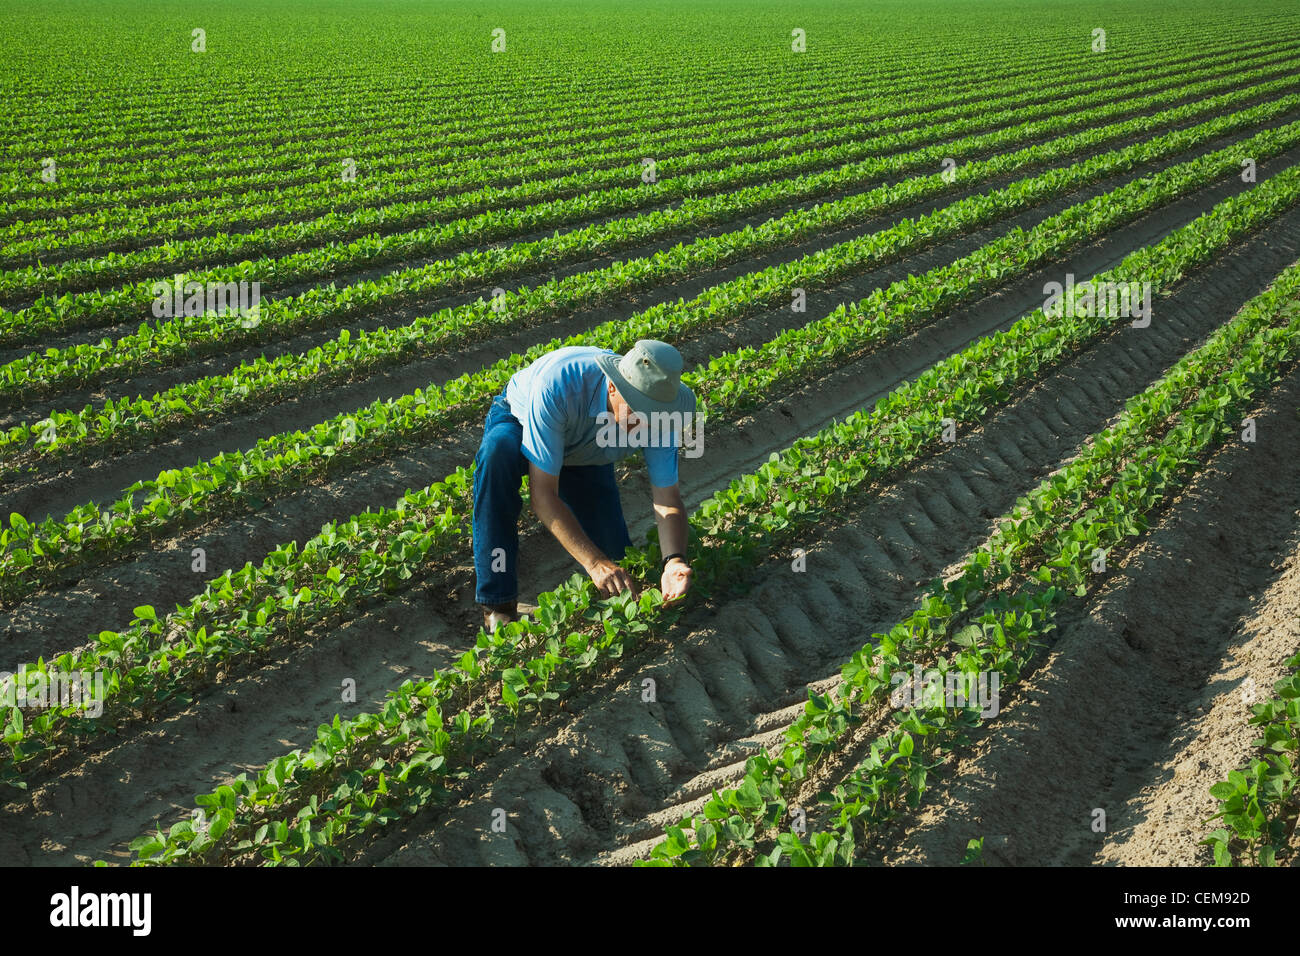 Un agricoltore (coltivatore) ispeziona la sua rapida crescita del raccolto di fila doppia fagioli di soia, con due righe per letto su letti 38 pollici oltre / Arkansas. Foto Stock